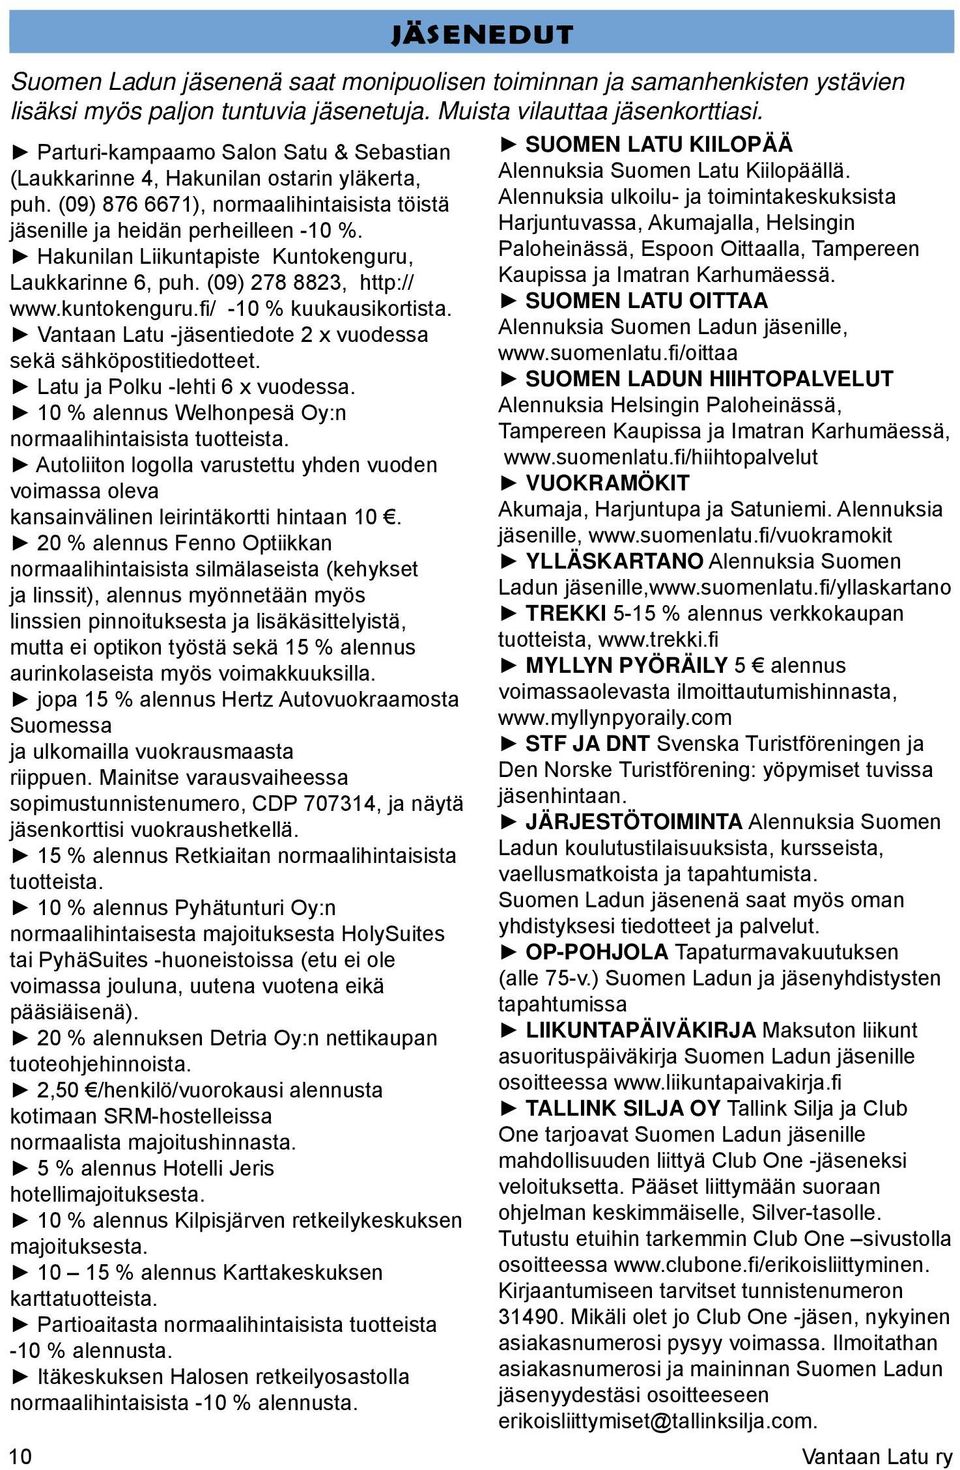 Hakunilan Liikuntapiste Kuntokenguru, Laukkarinne 6, puh. (09) 278 8823, http:// www.kuntokenguru.fi/ -10 % kuukausikortista. Vantaan Latu -jäsentiedote 2 x vuodessa sekä sähköpostitiedotteet.